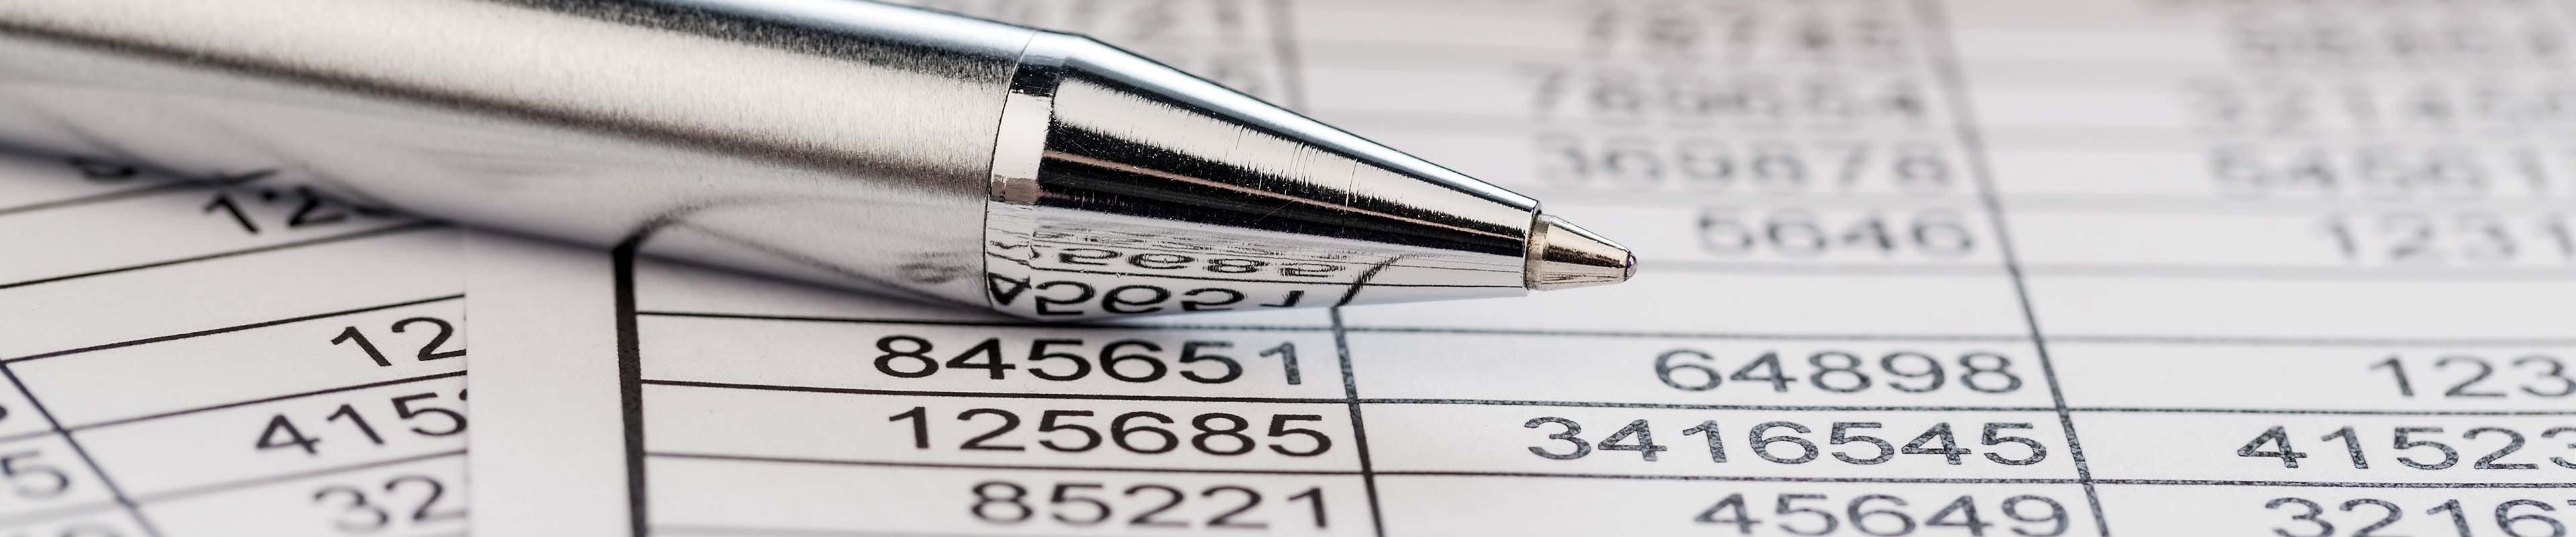 Image of a silver pen atop a spreadsheet.